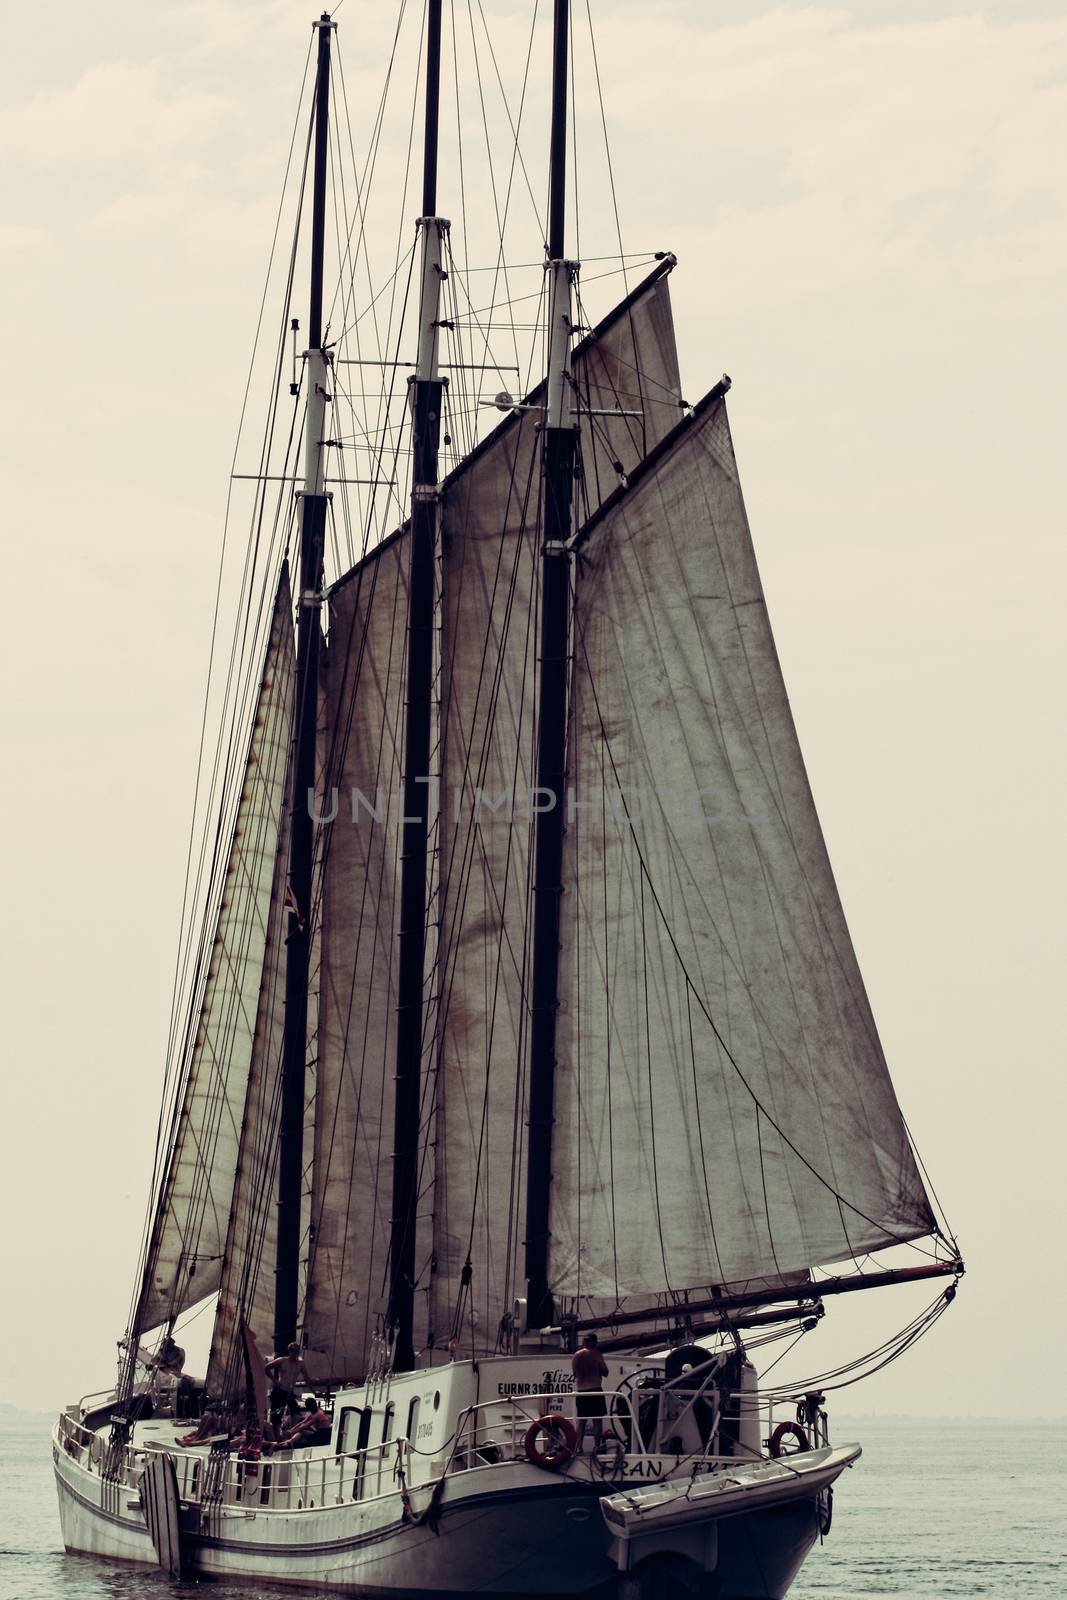 Sailing boat by dbmedia